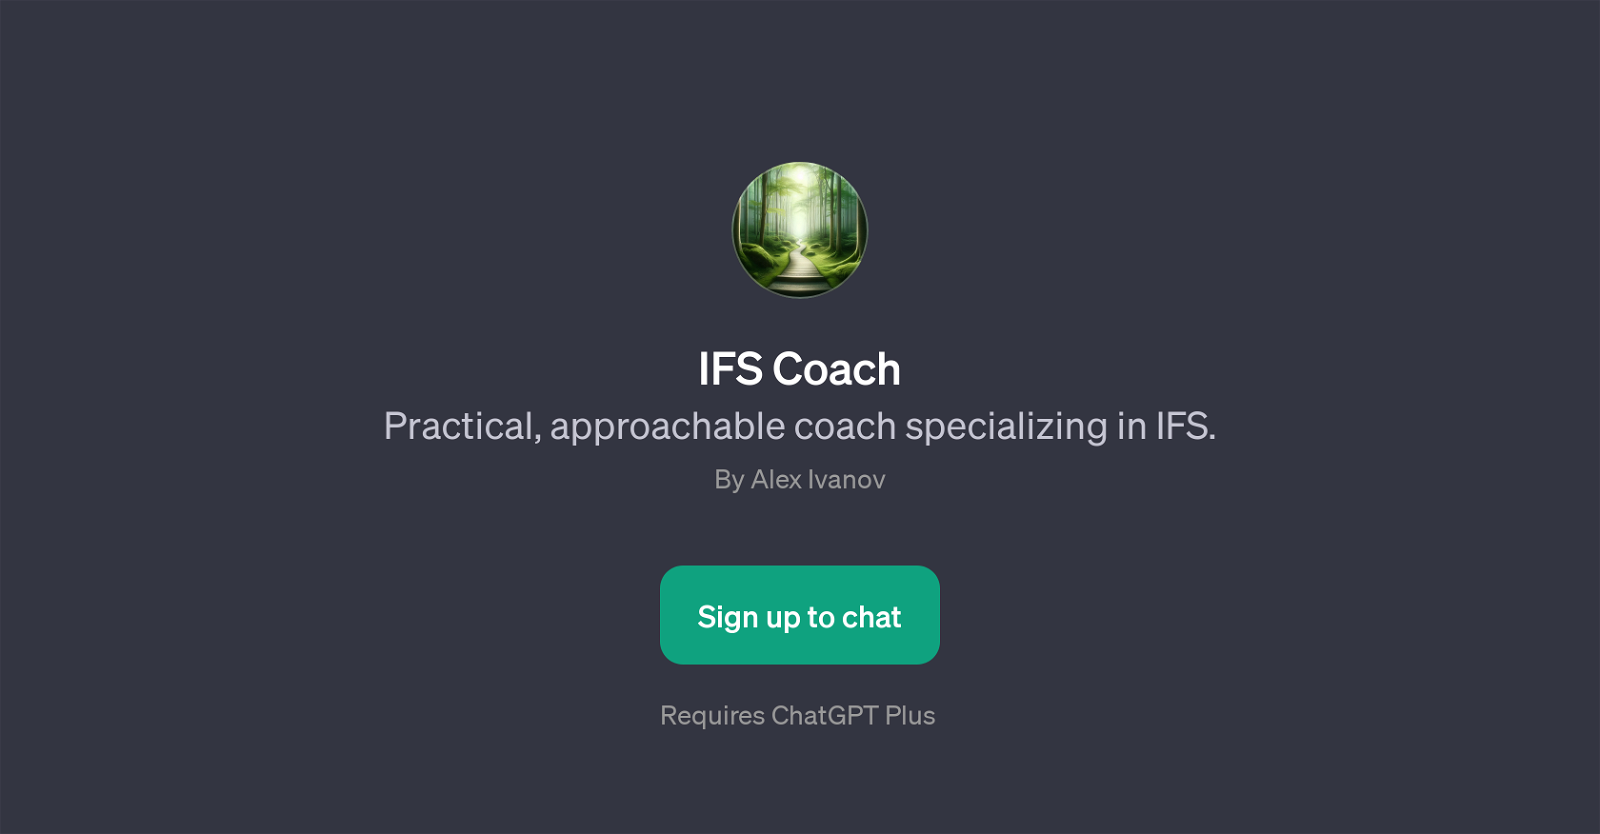 IFS Coach website